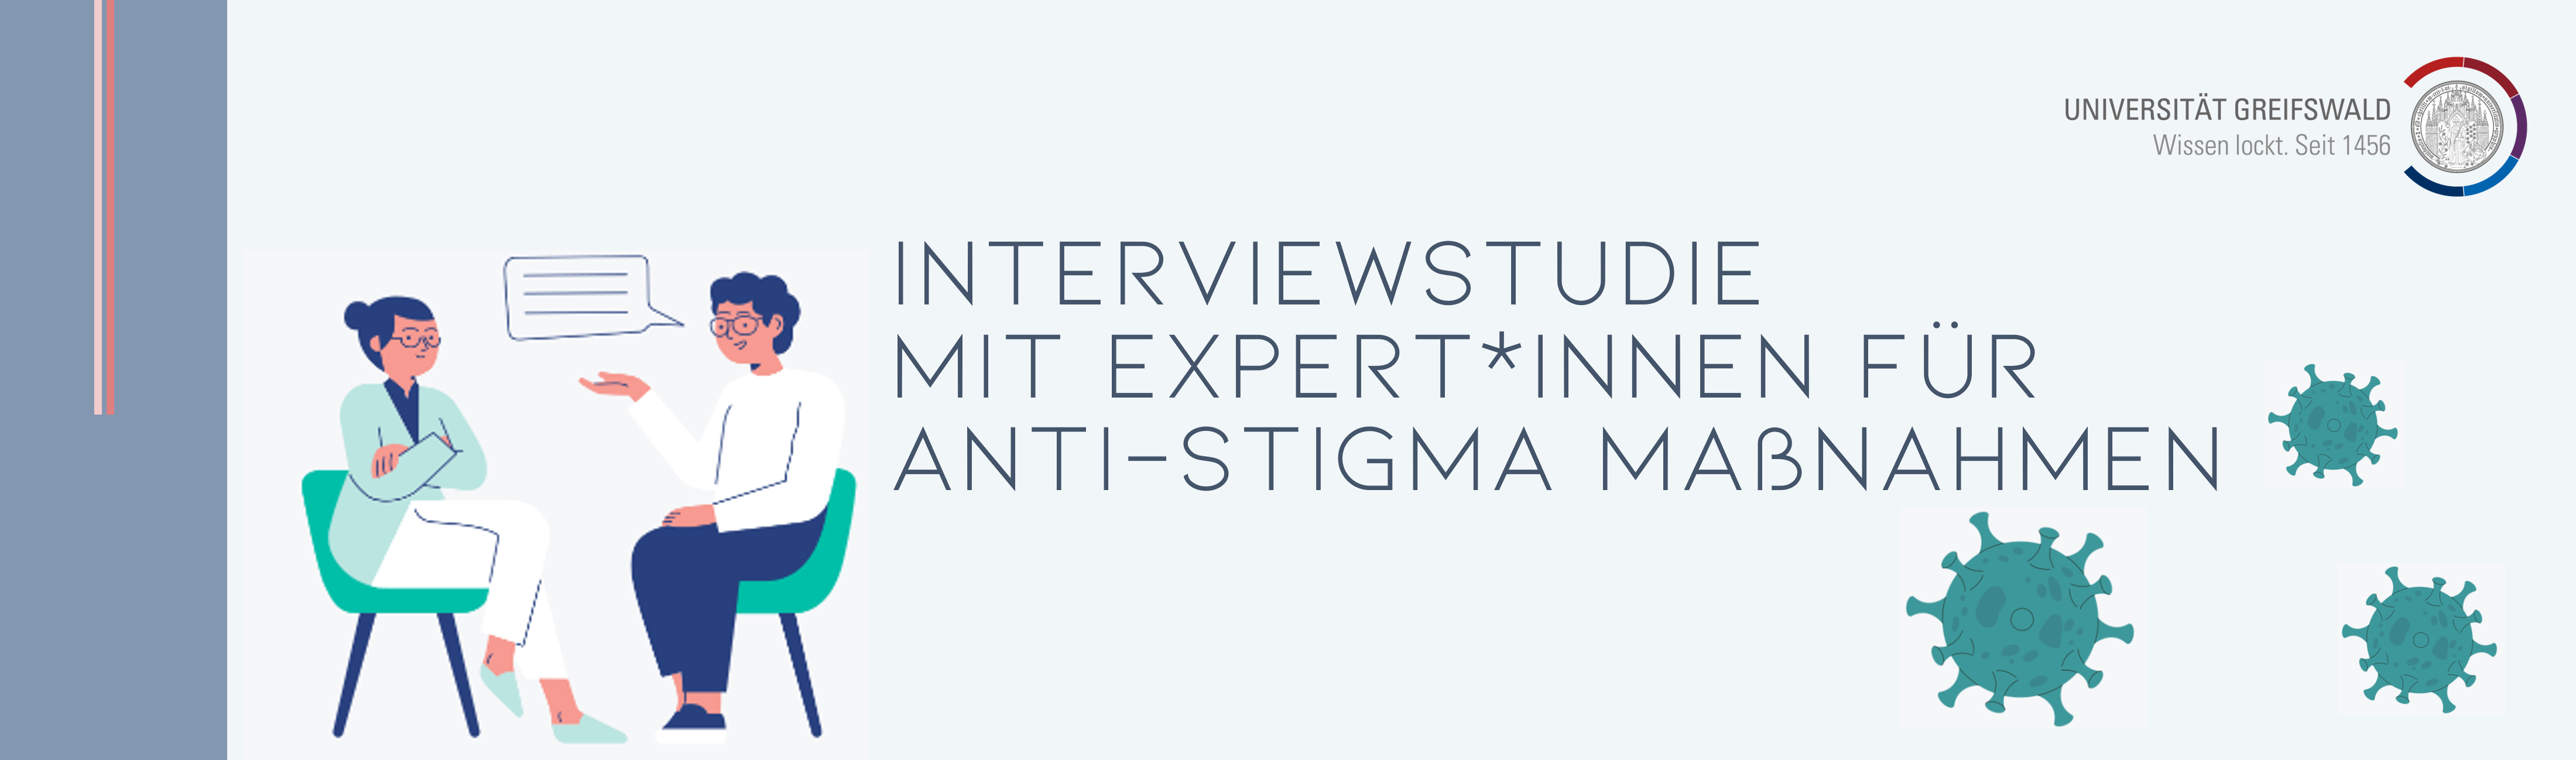 Interviewstudie mit Expert:innen für Anti-Stigma-Maßnahmen